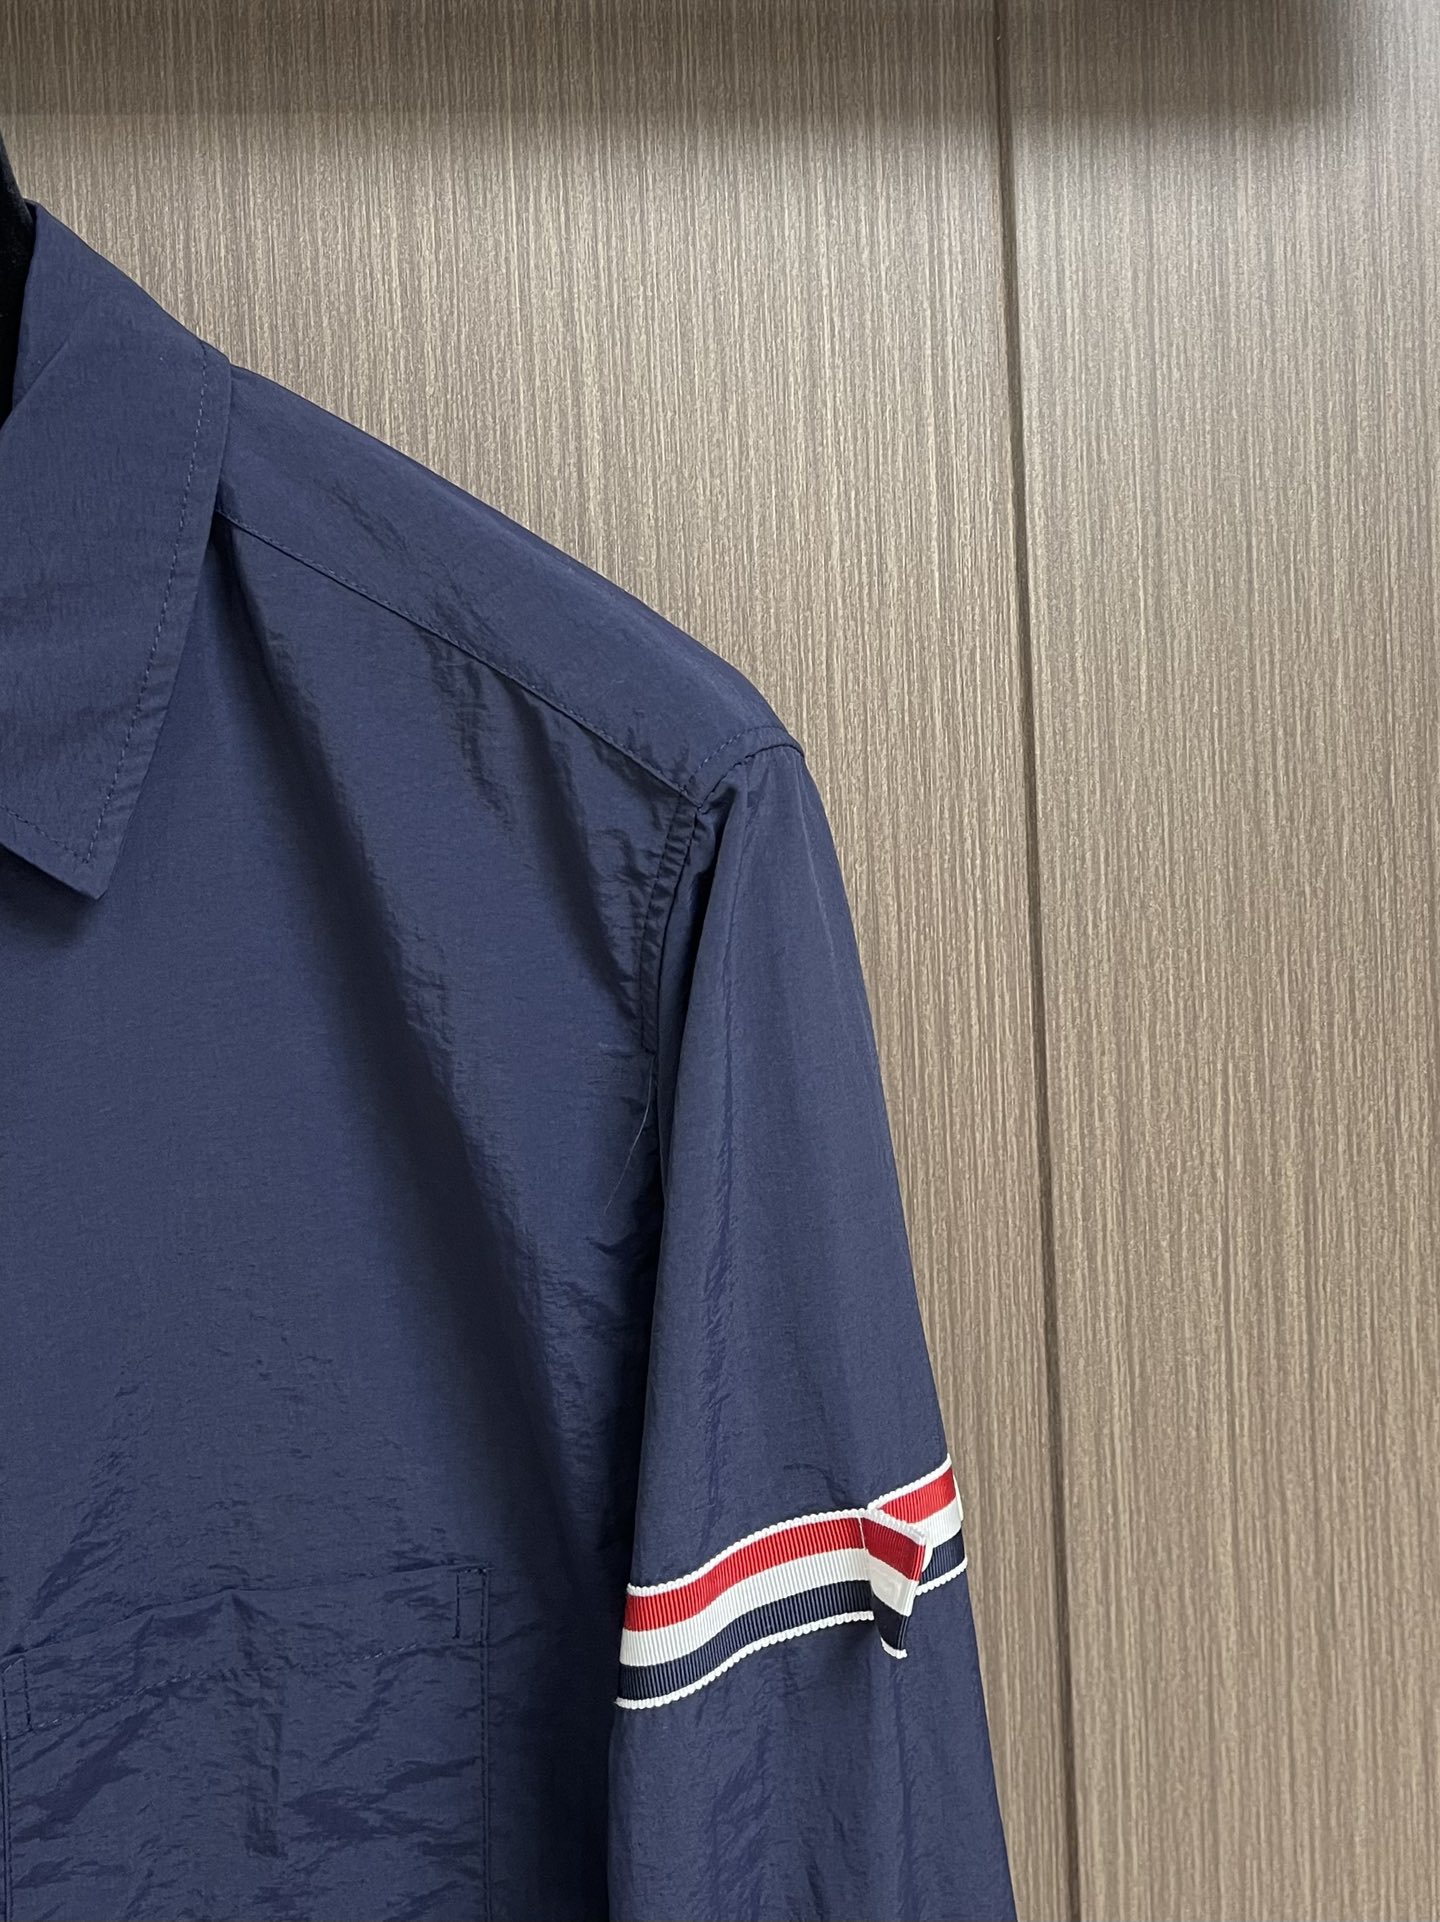 存在感のあるトム・ブラウン人気シャツn級品 両袖にブランドストライプの装飾_3